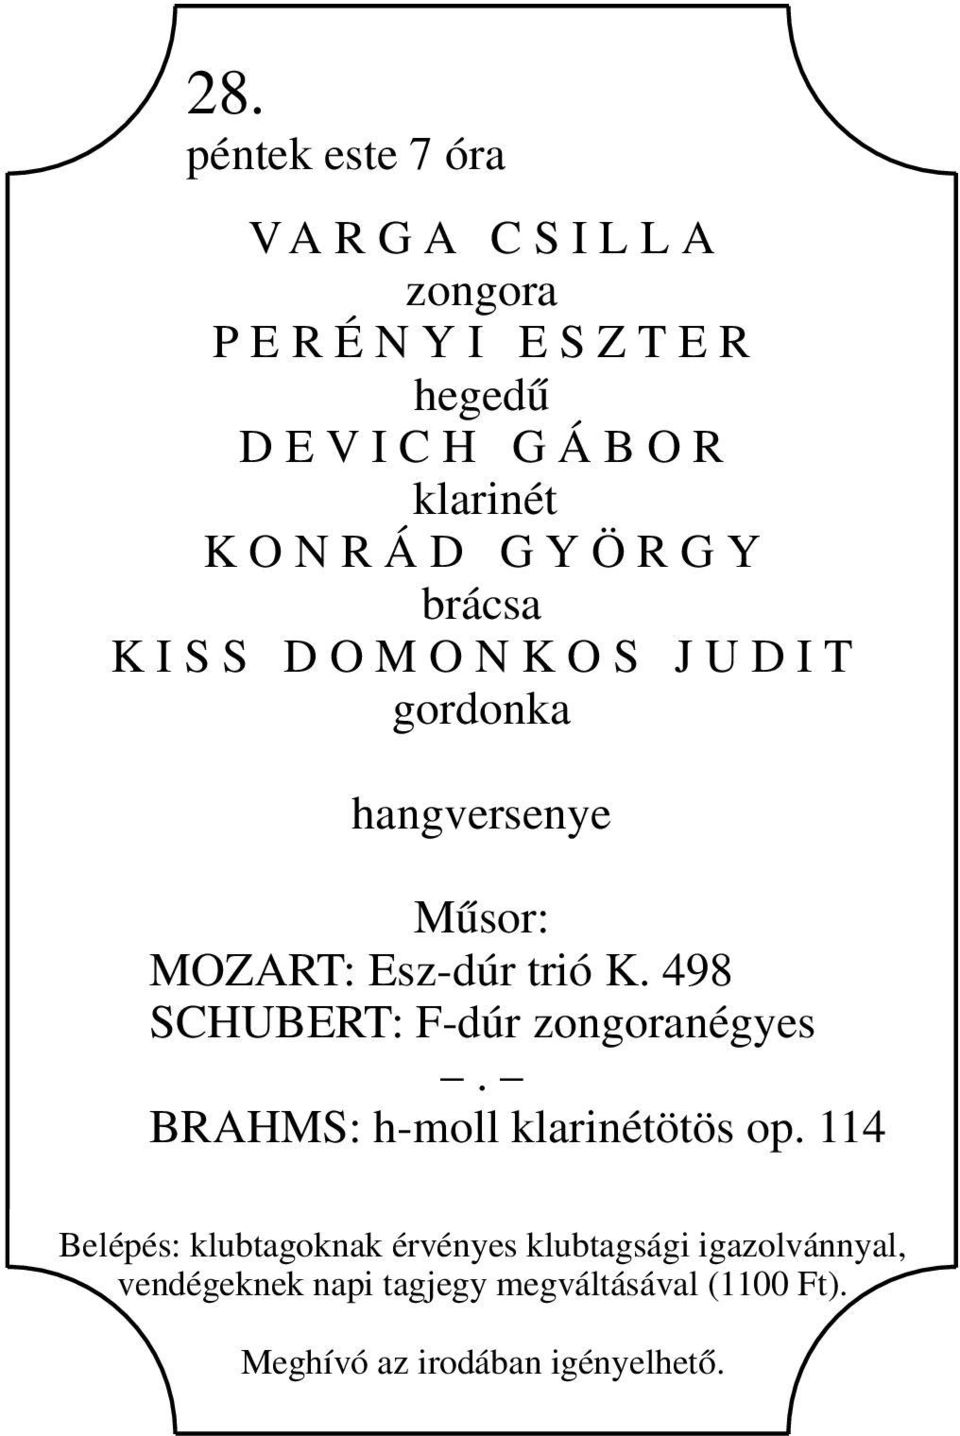 Esz-dúr trió K. 498 SCHUBERT: F-dúr zongoranégyes. BRAHMS: h-moll klarinétötös op.